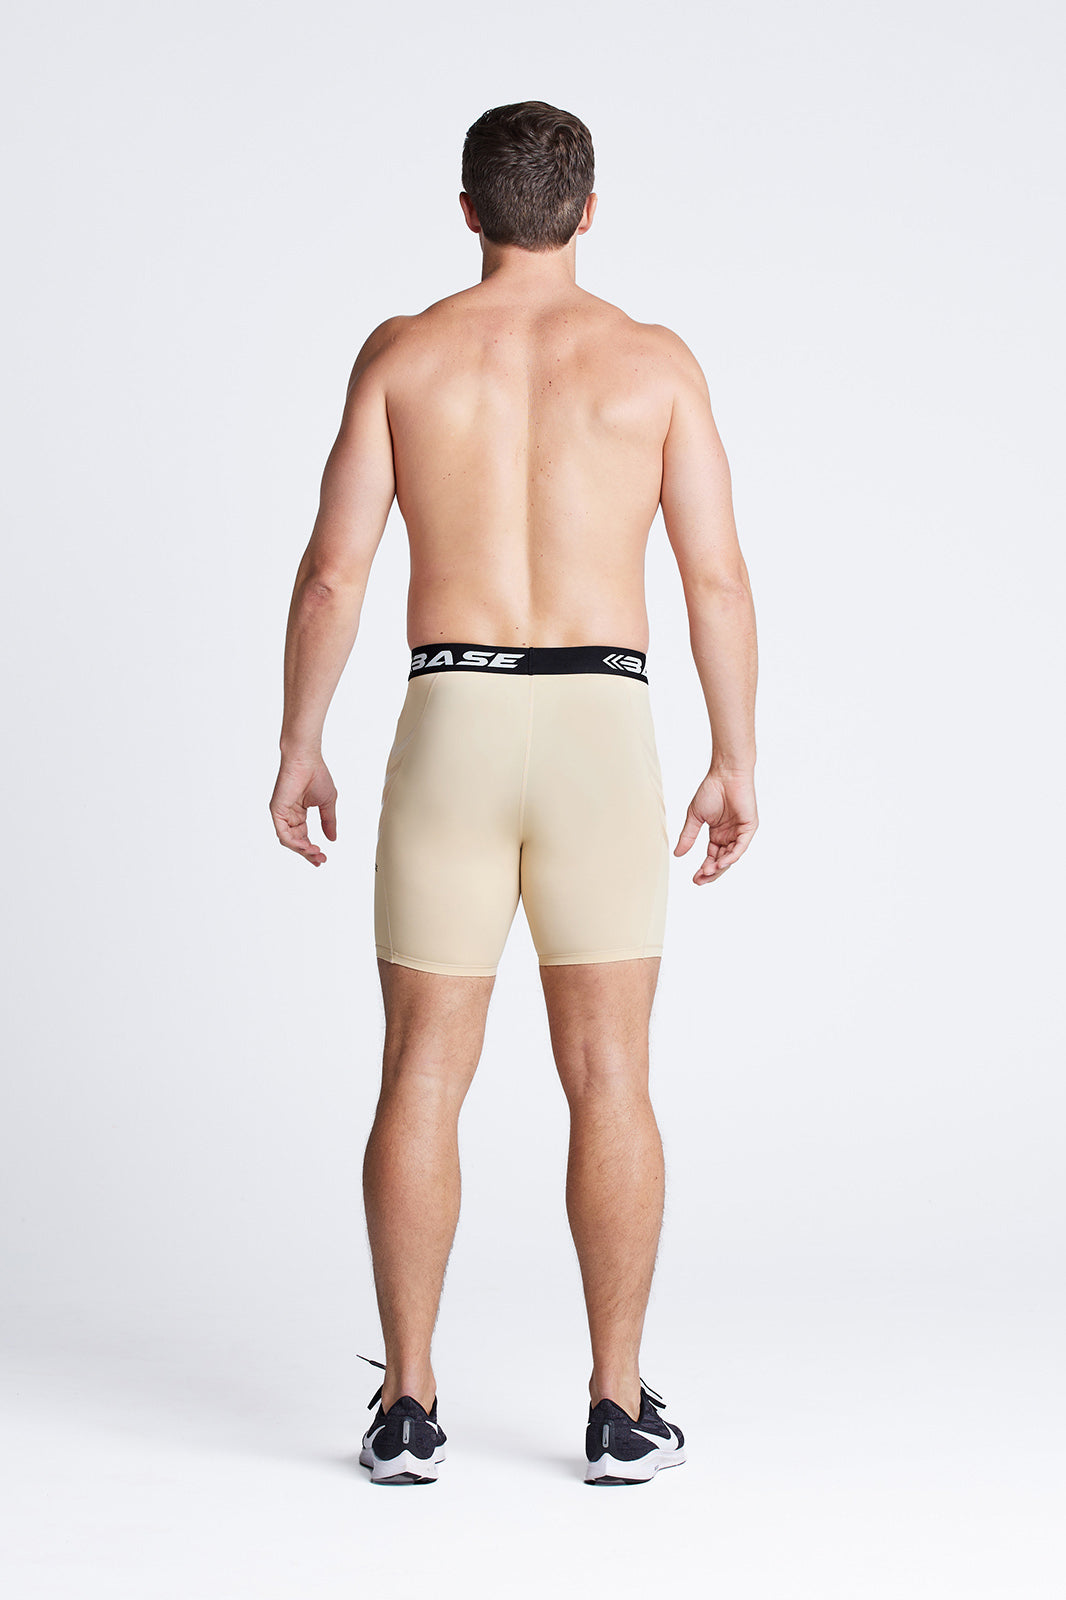 BASE Men's AFL Compression Shorts - Nude – BASE Compression